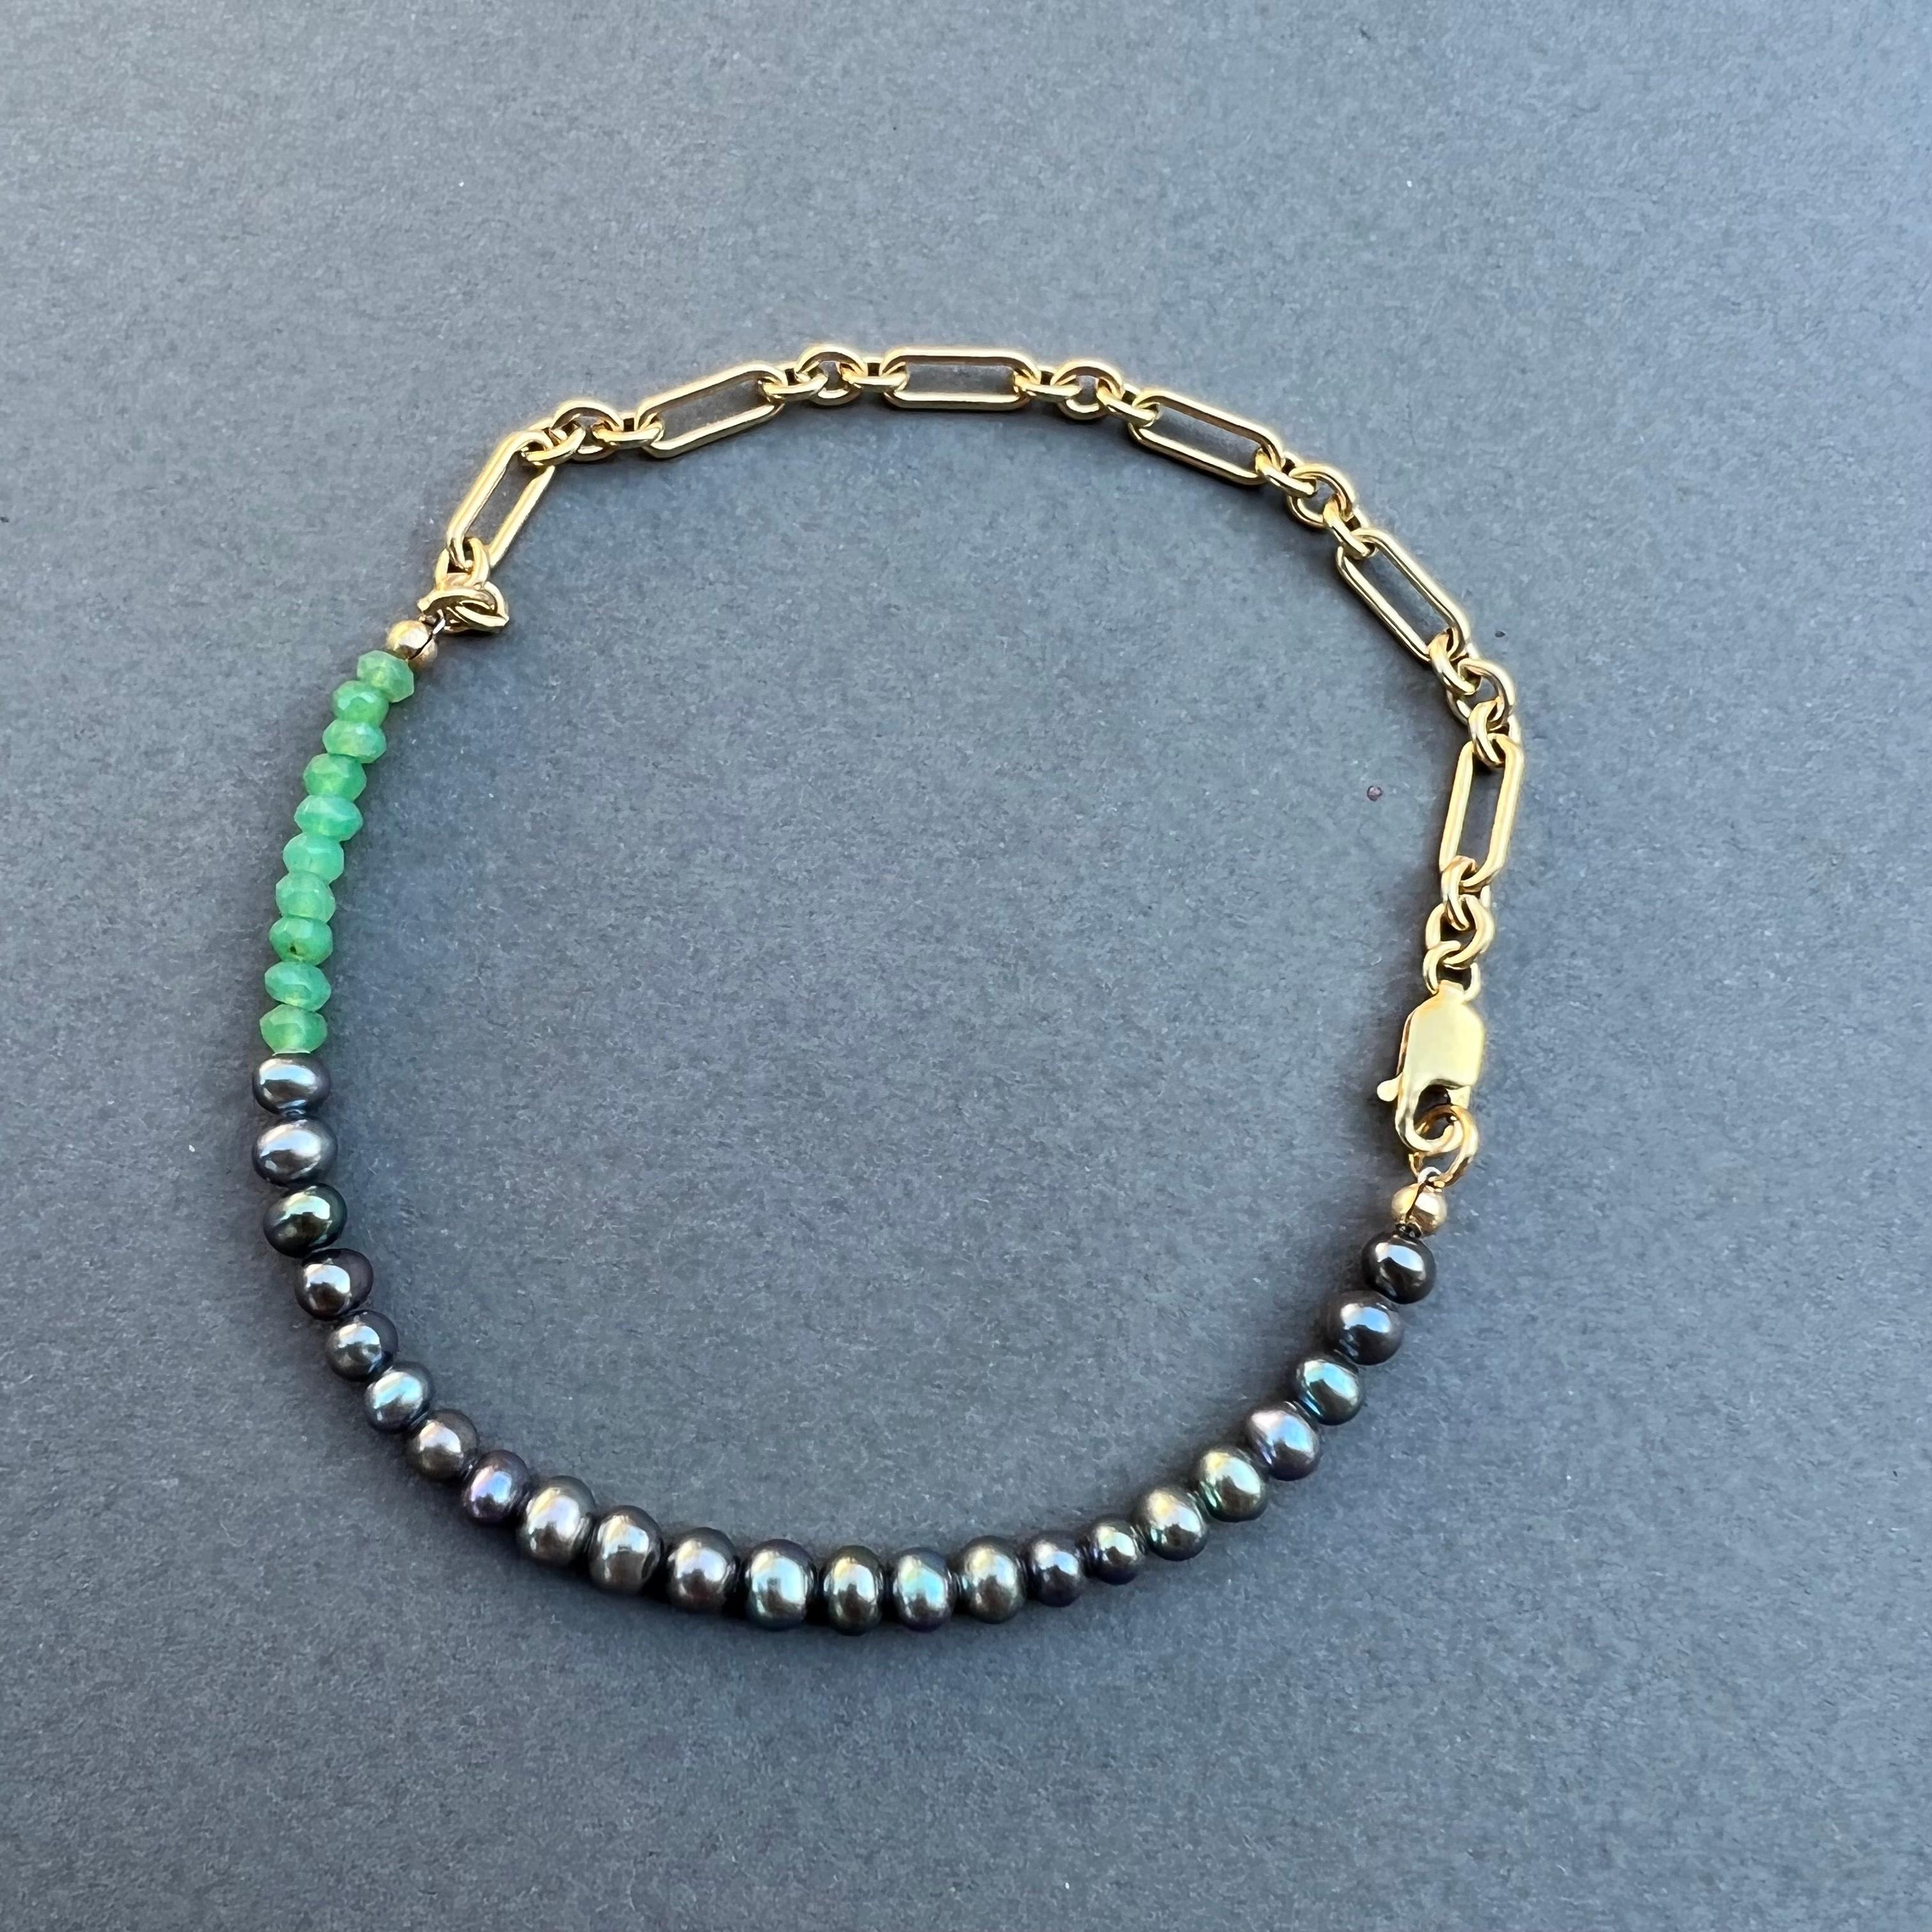 Bracelet perle noire chaîne chrysoprase J Dauphin
Chaîne remplie d'or

bracelet de cheville en perles d'eau douce 